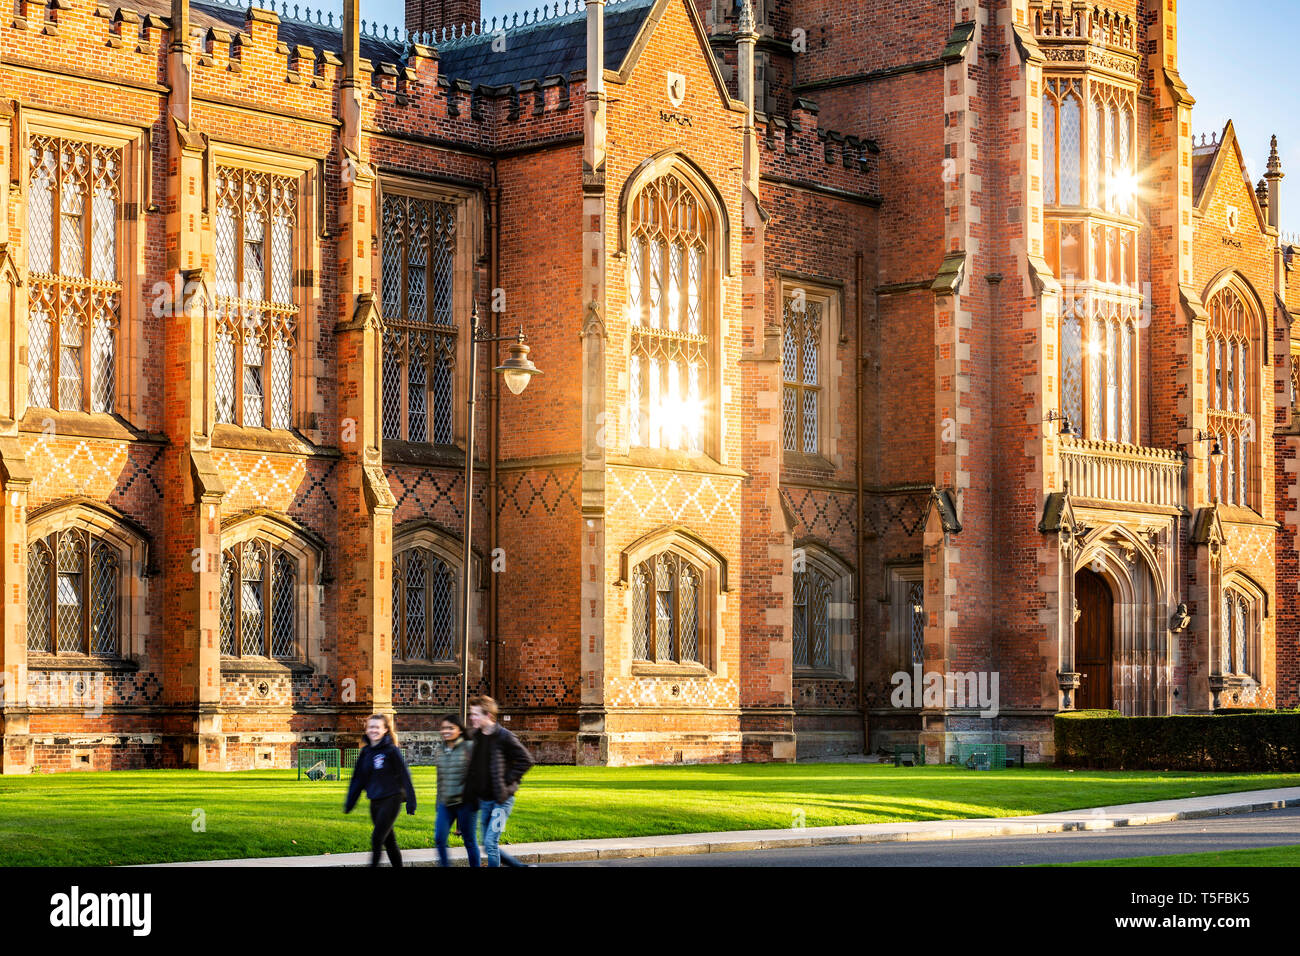 Queen's University, Belfast Northern Ireland Stock Photo